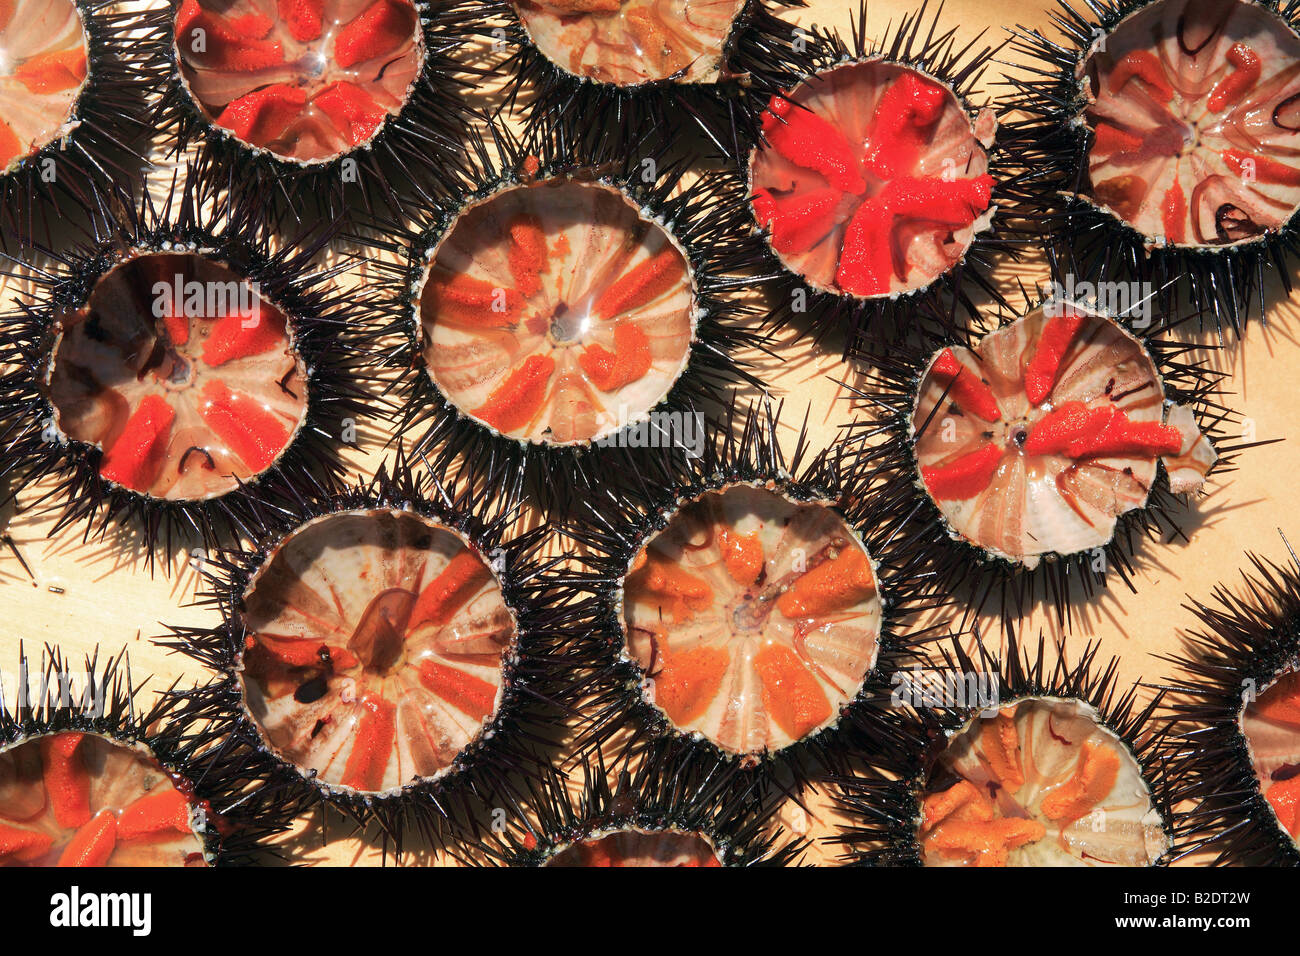 Grecia close up aperto dei ricci di mare con red roe esposti Foto Stock